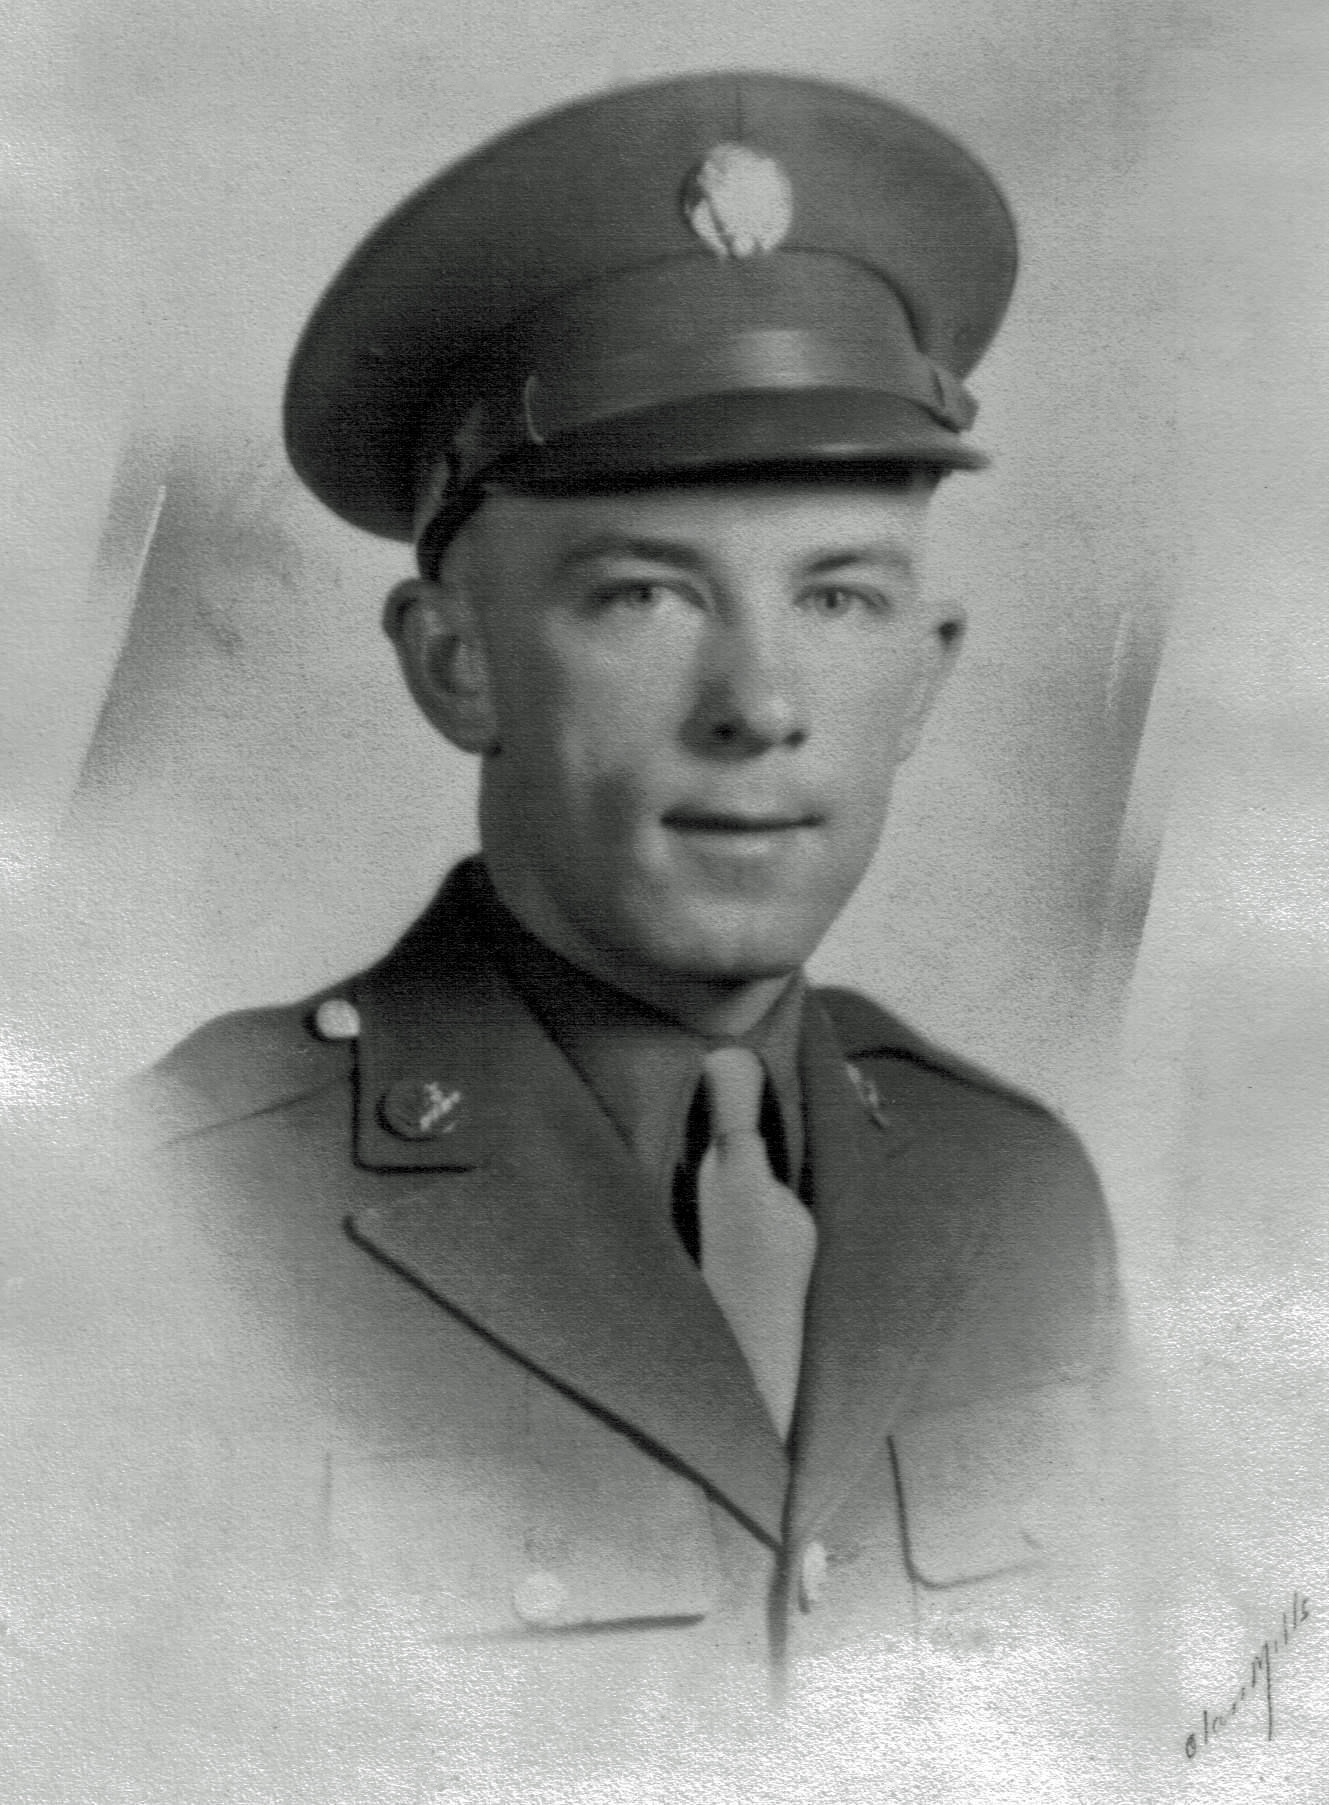 Private Joseph L. Comer